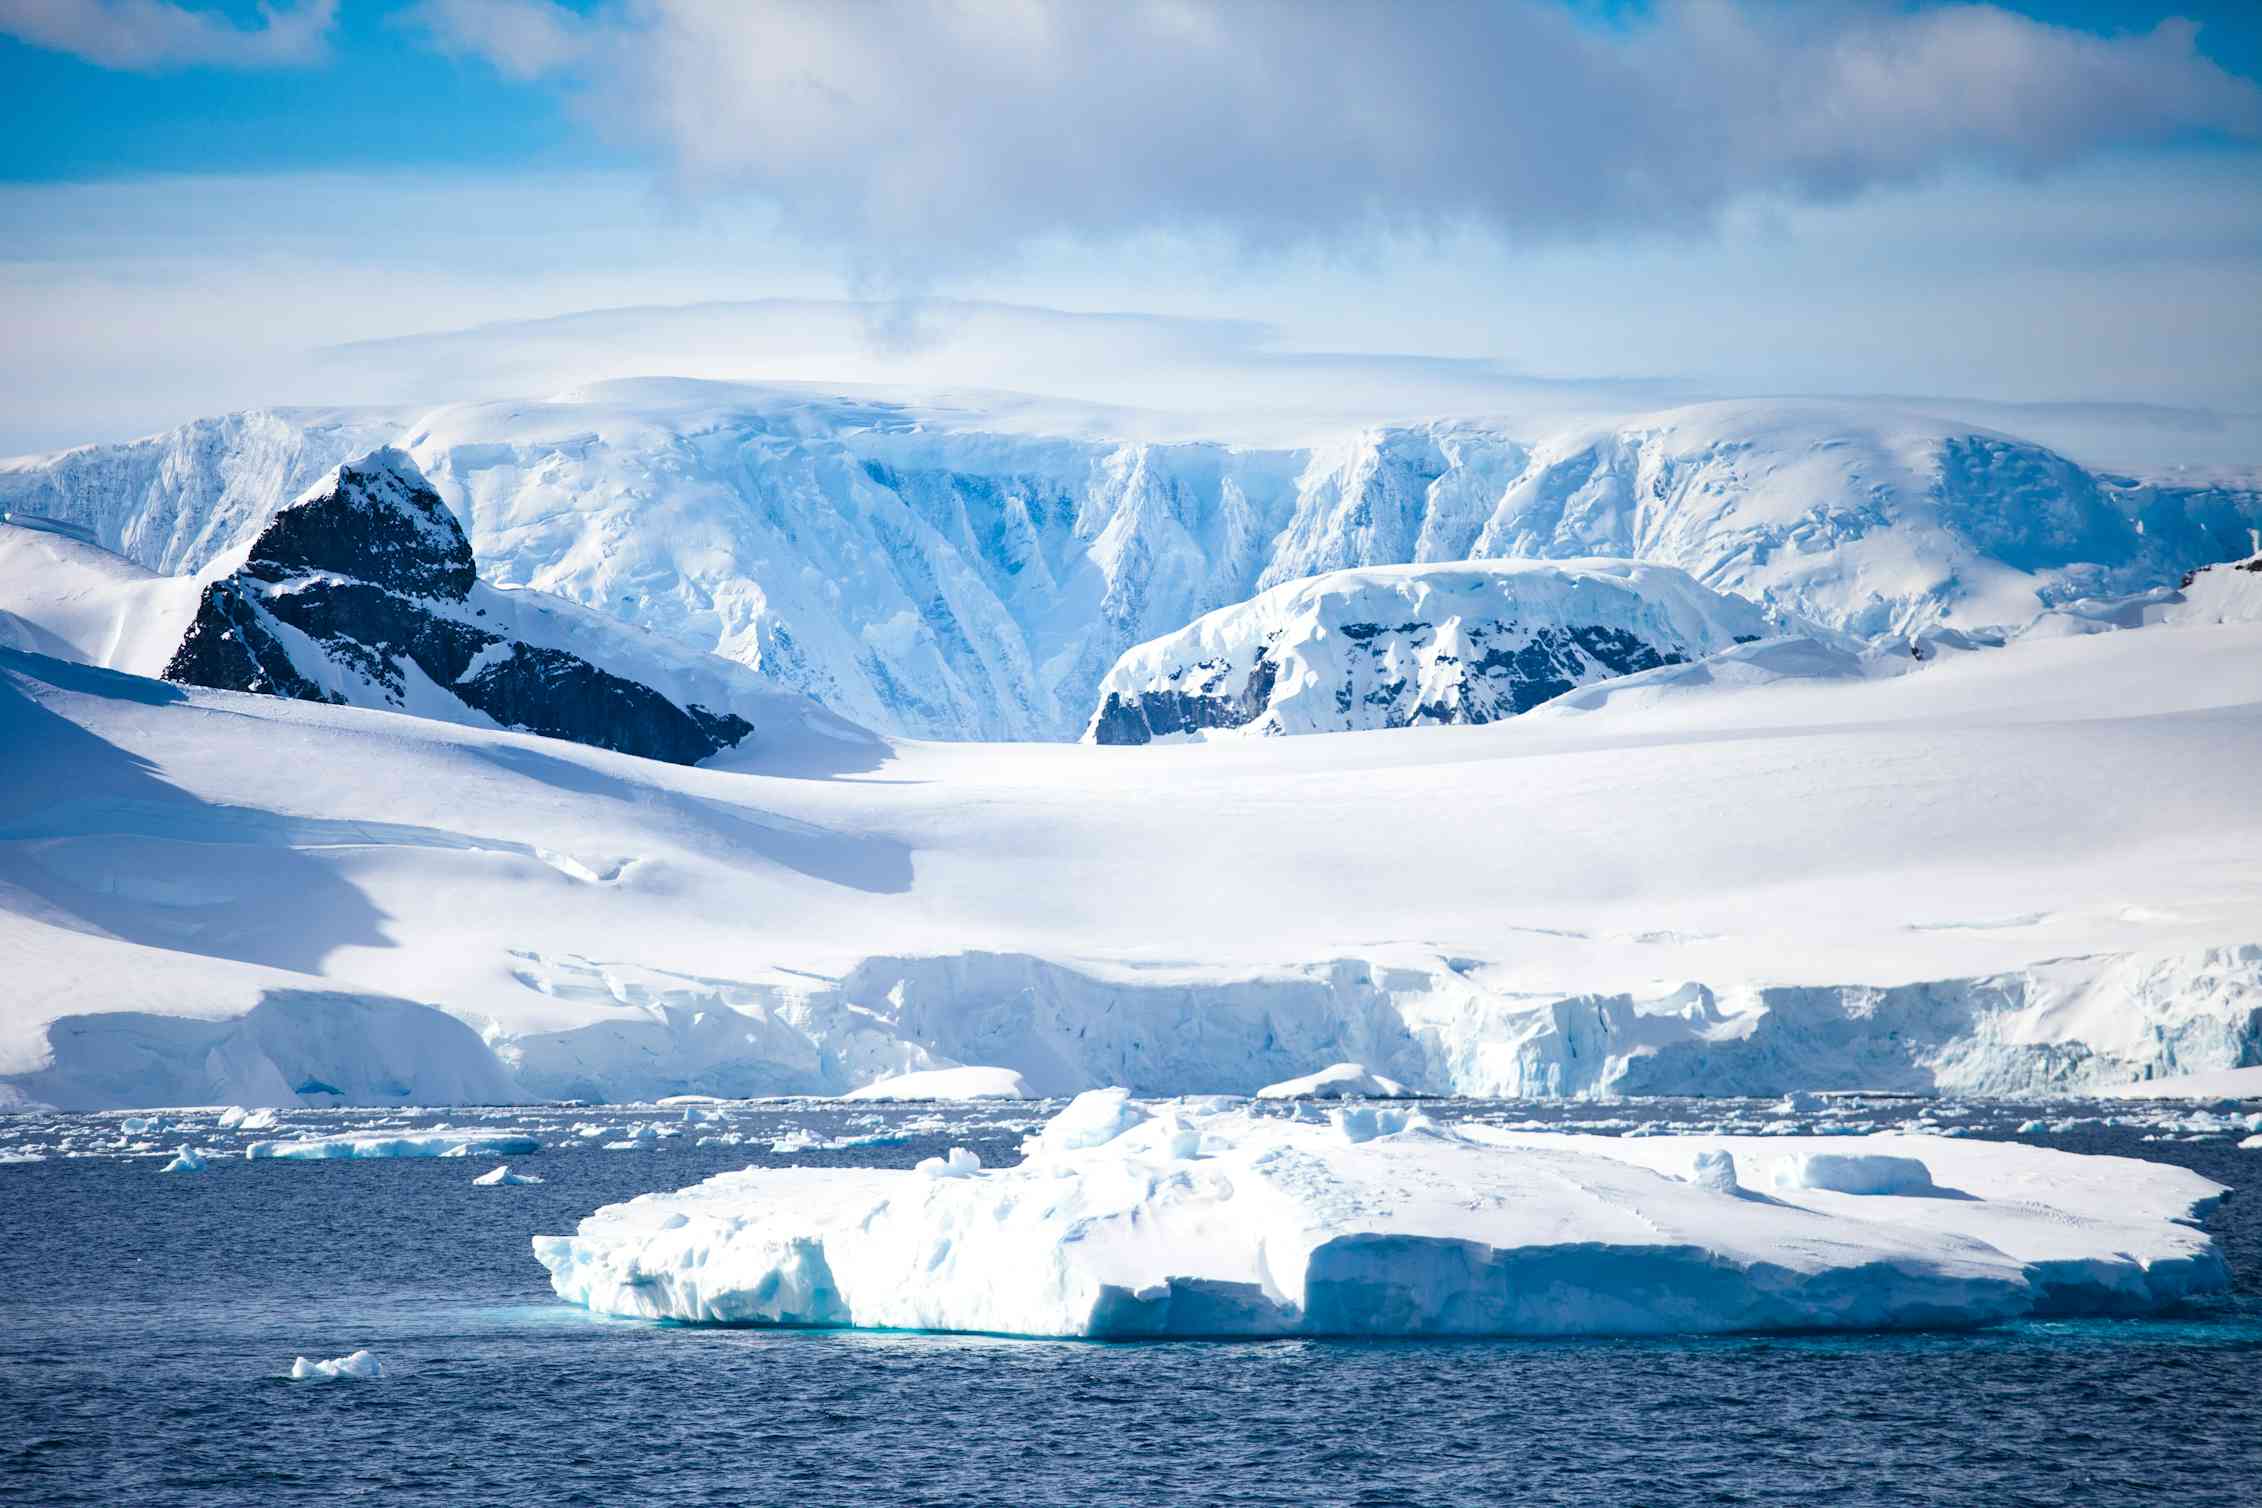 Антарктические полюса. Арктика Антарктика Антарктида. Покровные ледники Антарктиды. Южный полюс Антарктика. Антарктида (материк) ледники Антарктиды.